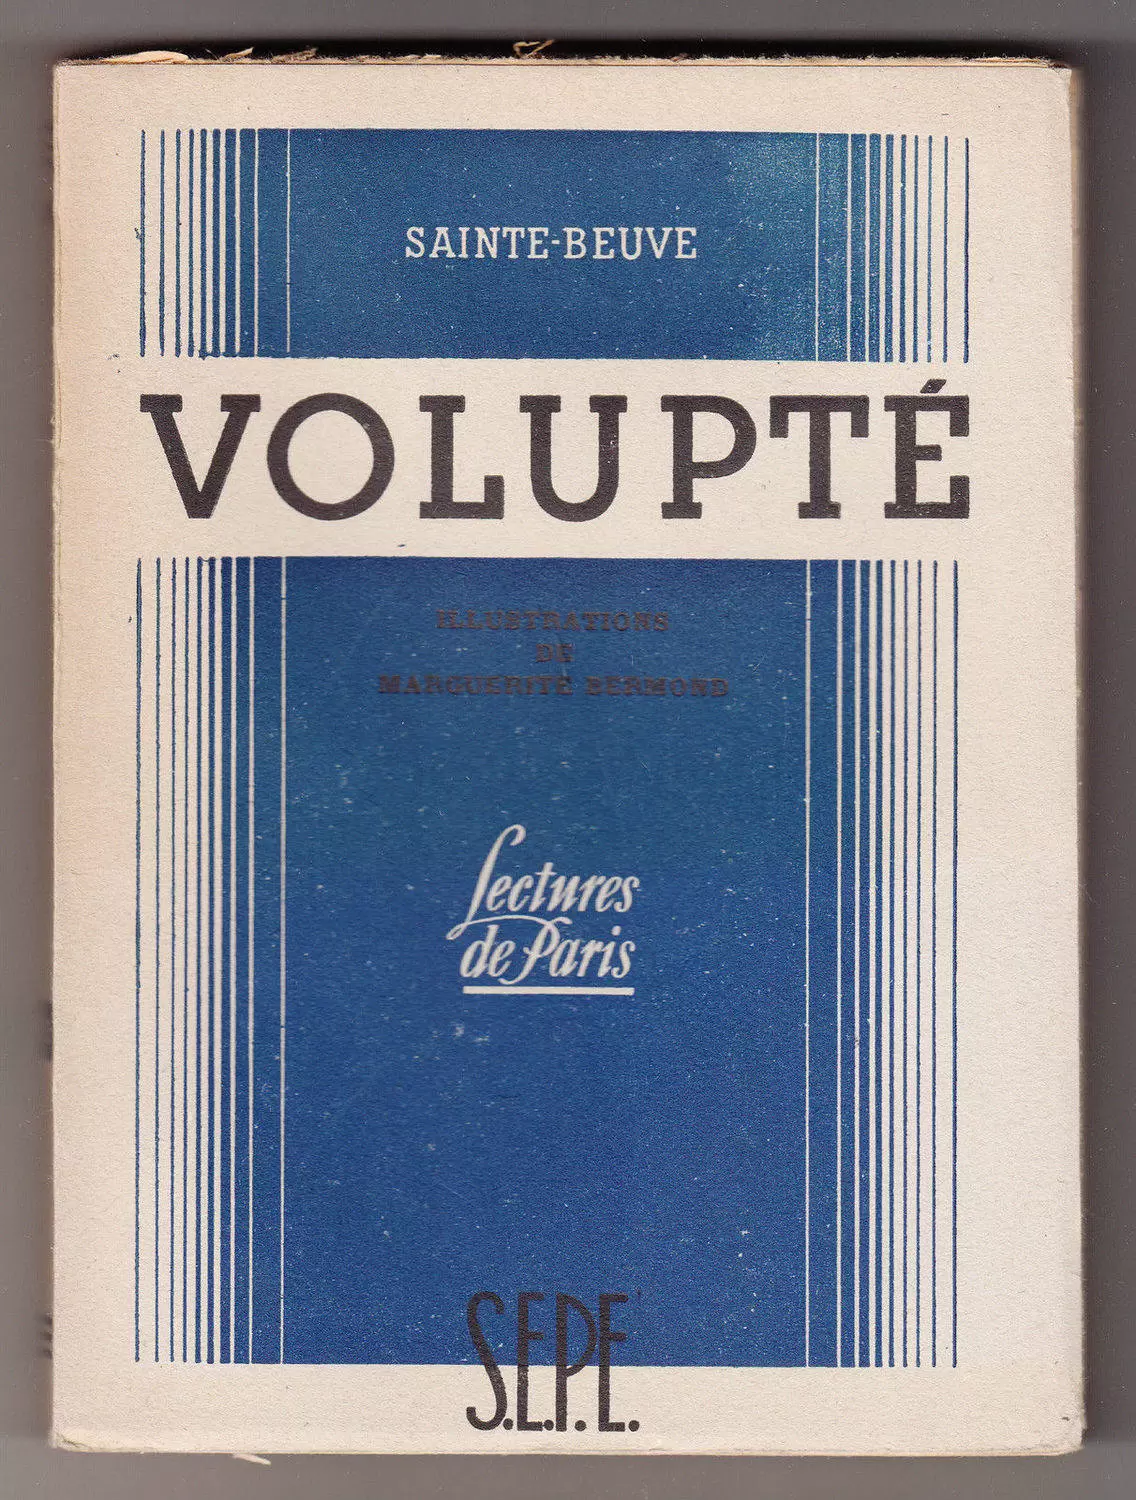 S.E.P.E. Lectures de Paris - Volupté